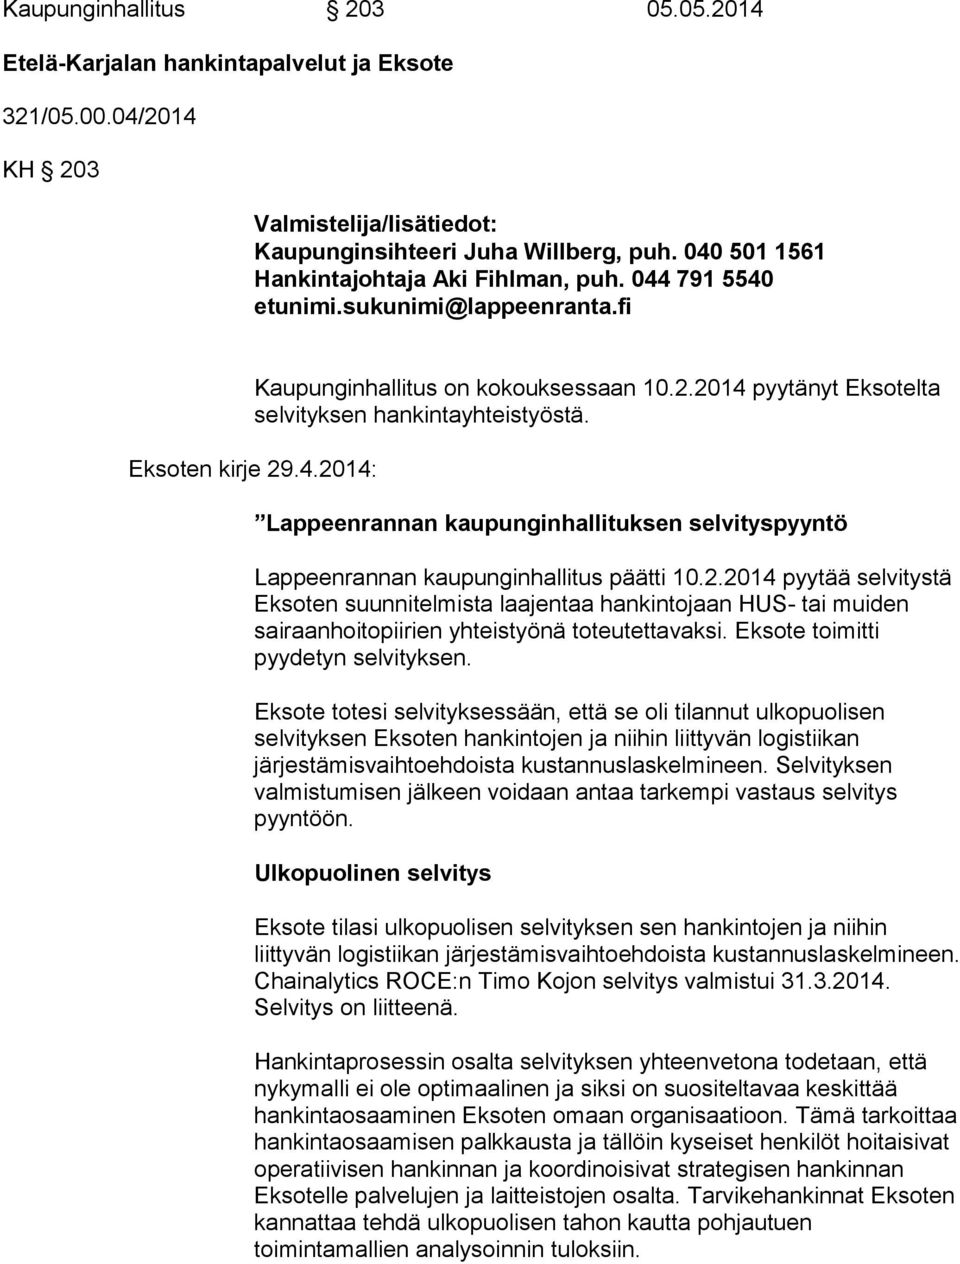 Eksoten kirje 29.4.2014: Lappeenrannan kaupunginhallituksen selvityspyyntö Lappeenrannan kaupunginhallitus päätti 10.2.2014 pyytää selvitystä Eksoten suunnitelmista laajentaa hankintojaan HUS- tai muiden sairaanhoitopiirien yhteistyönä toteutettavaksi.